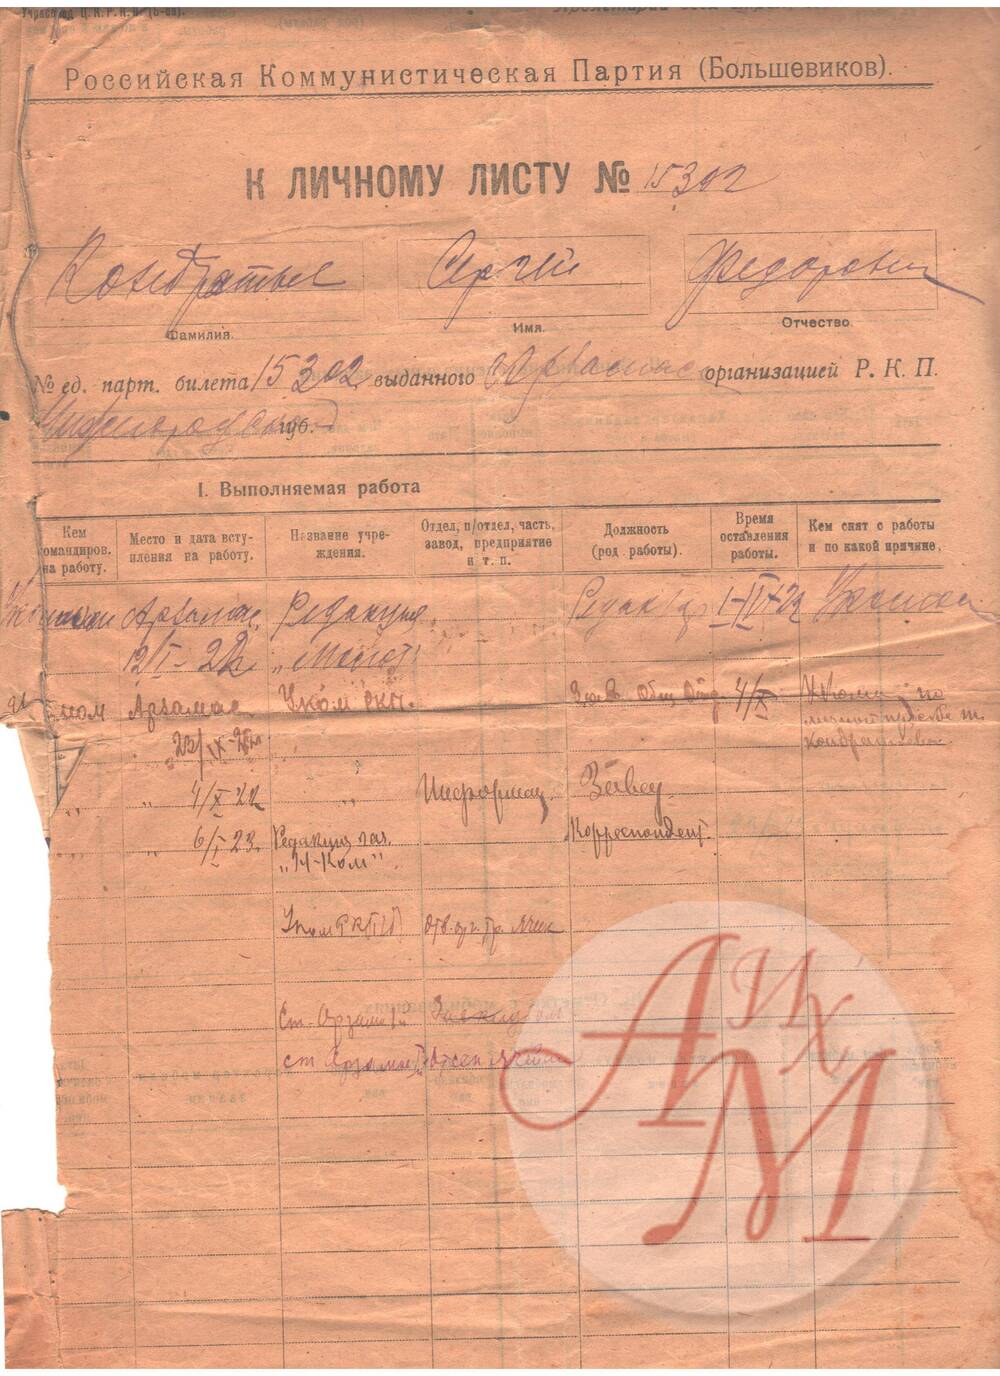 Документ. К личному листу Кондратьева С.Ф. с данными о его работе.